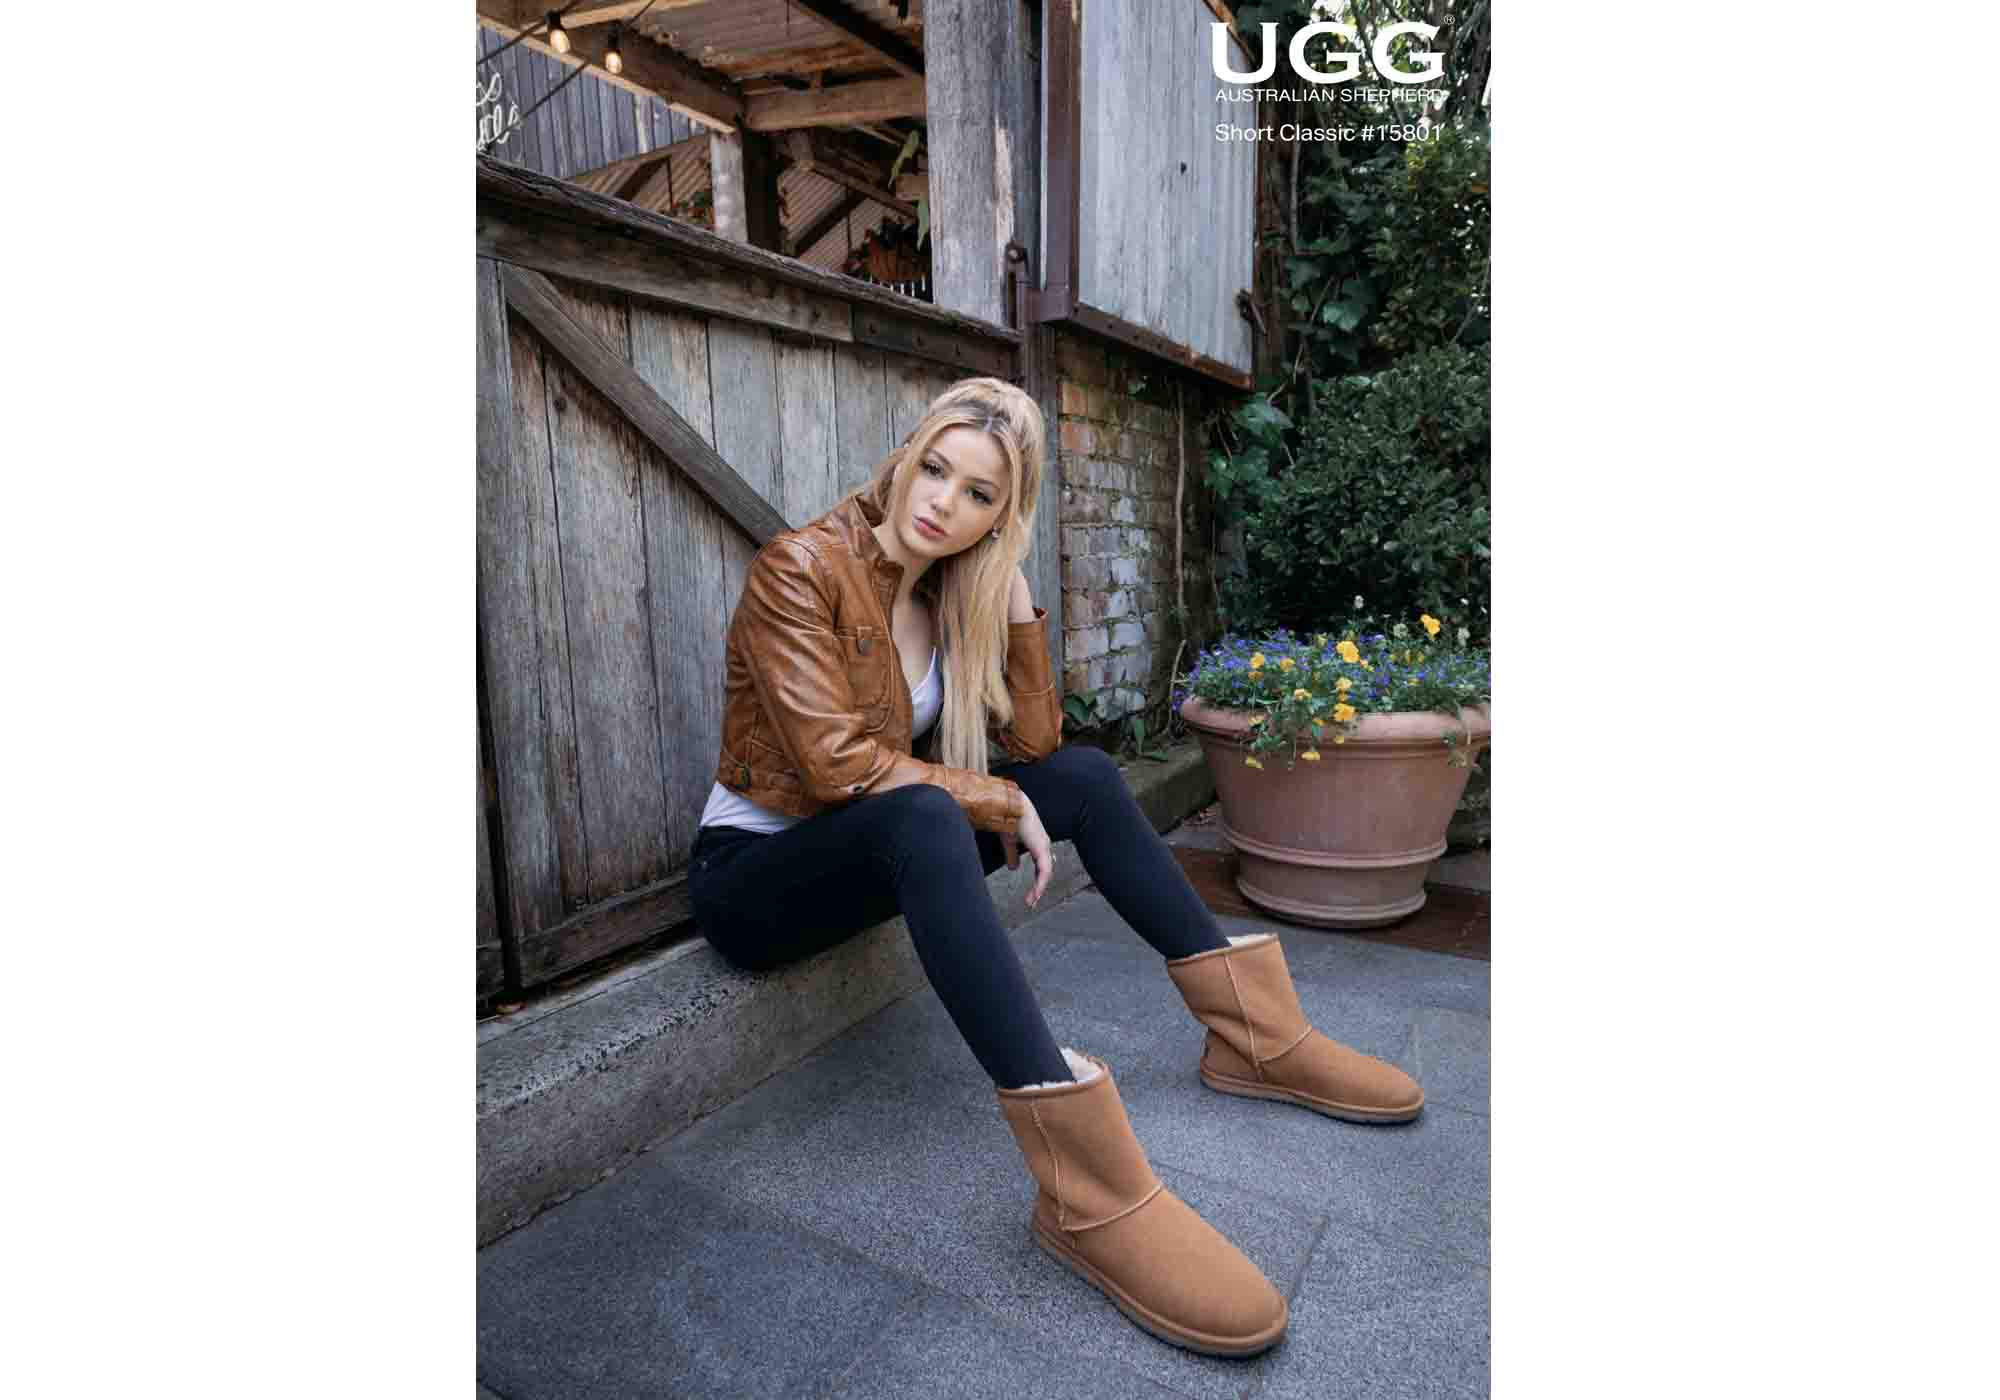 UGG Australian Shepherd Unisex Short Classic Ugg Boots